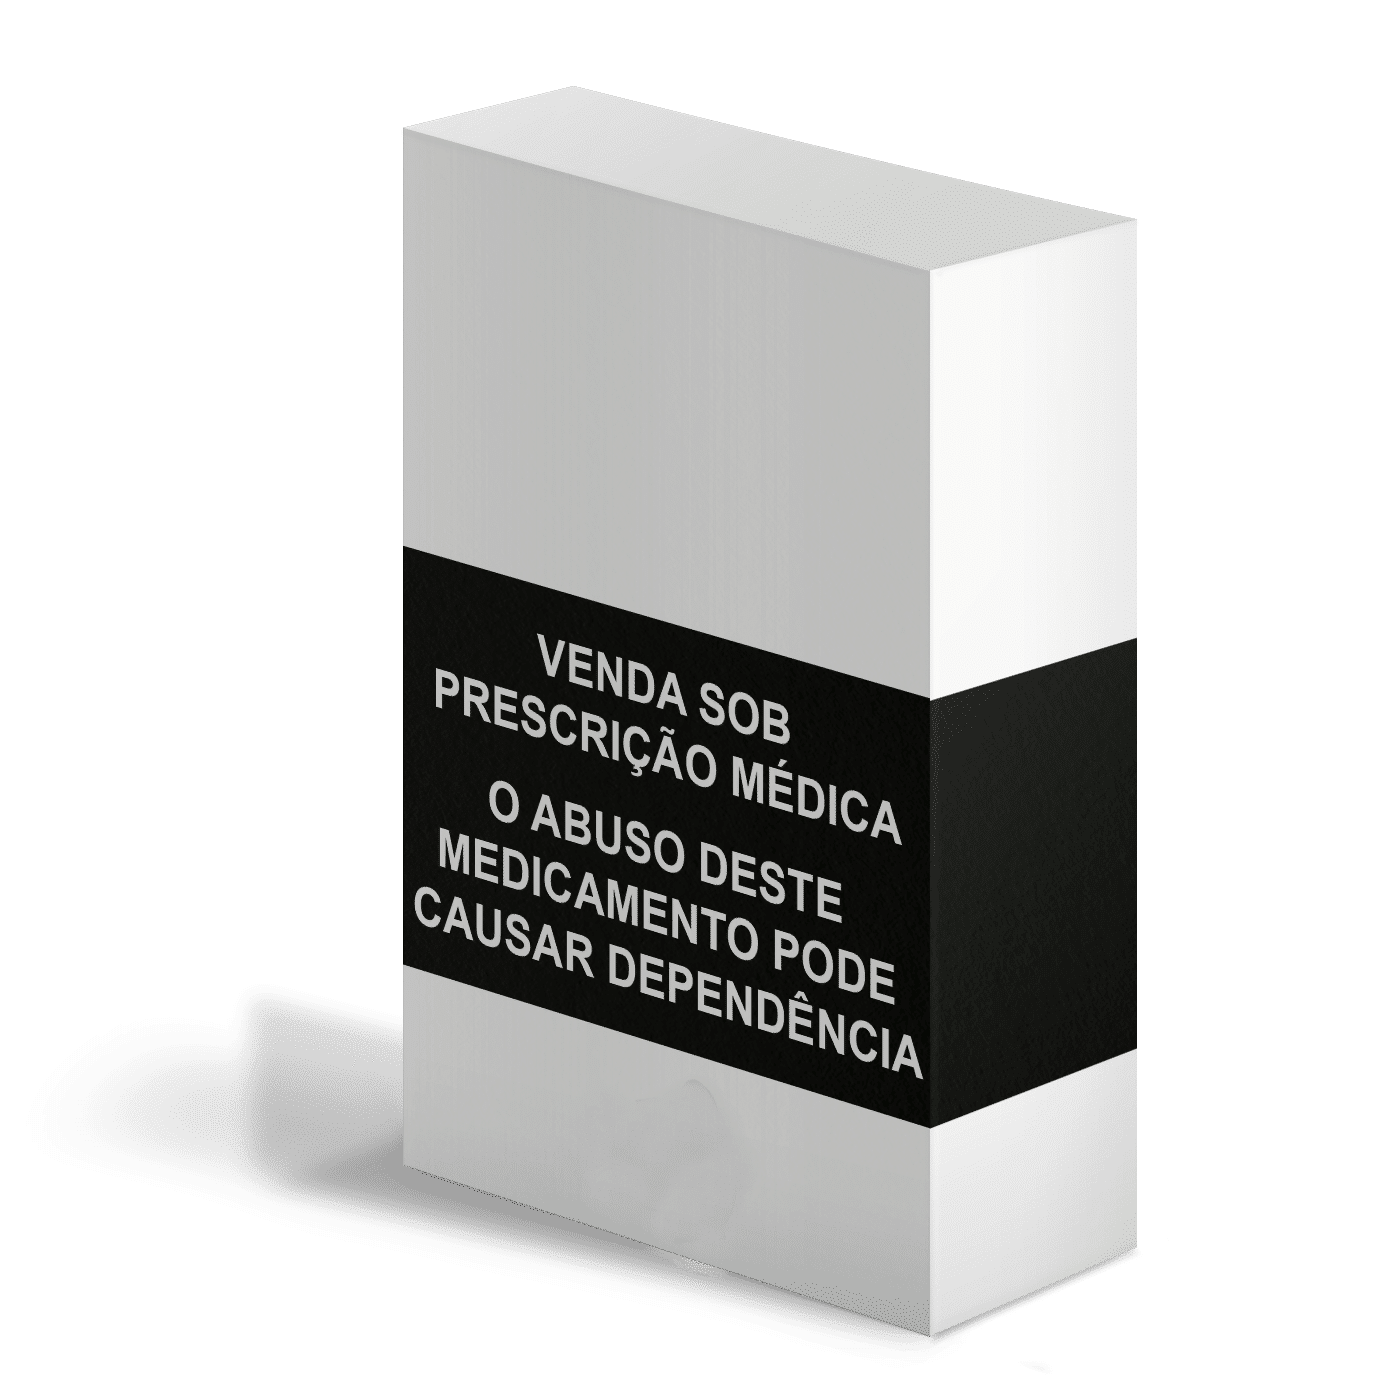 caixa do medicamento Benzodiazepínicos com recomendação de uso